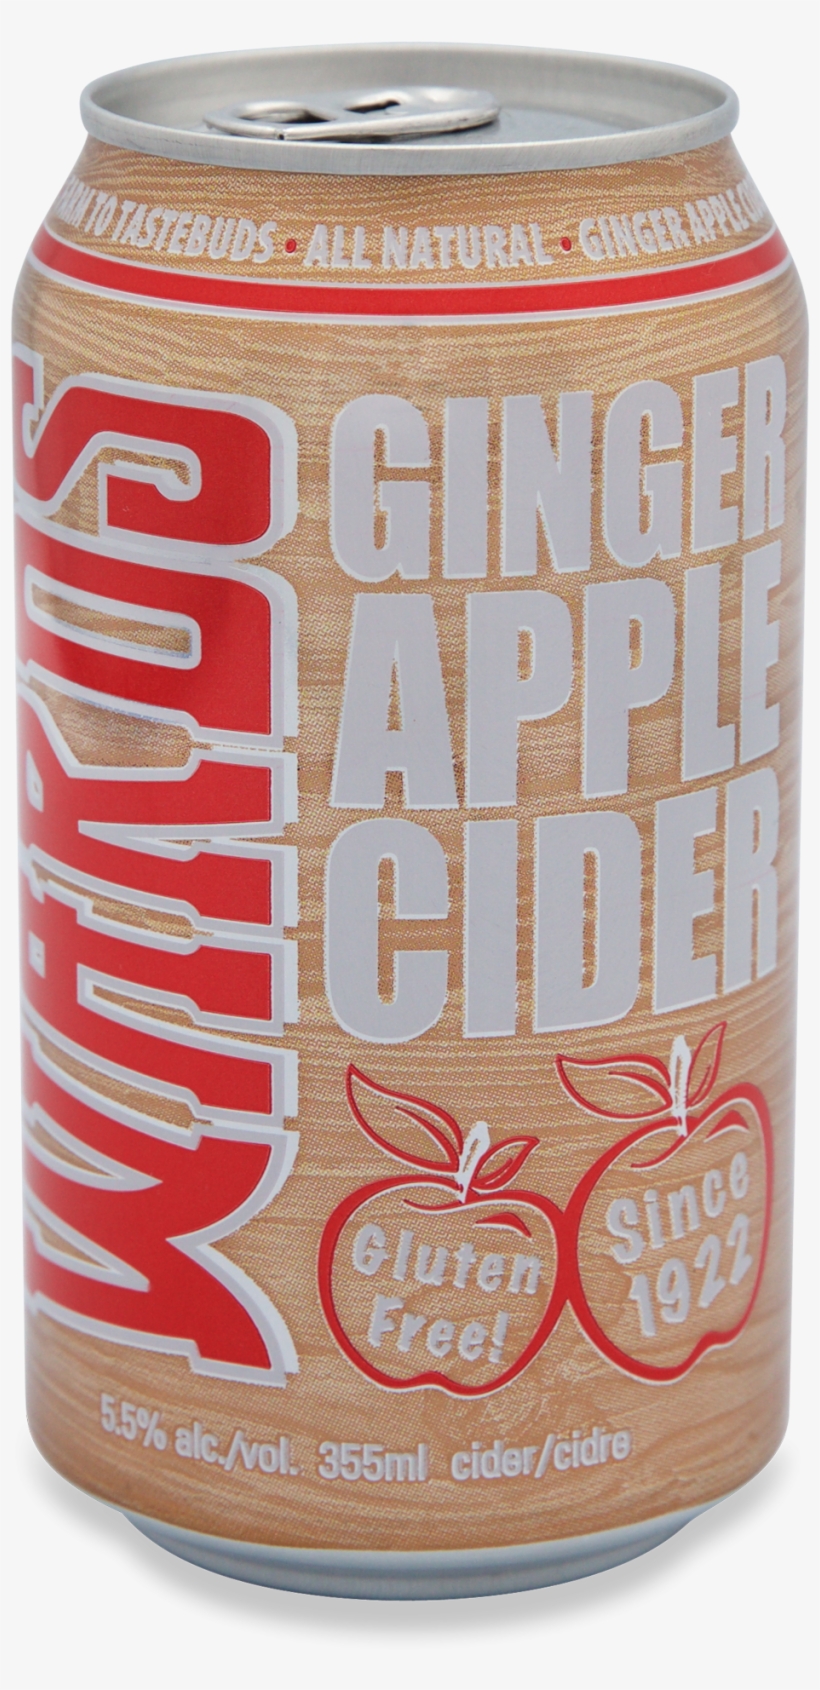 Wards Ginger Apple Cider - Sikhye, transparent png #2214673